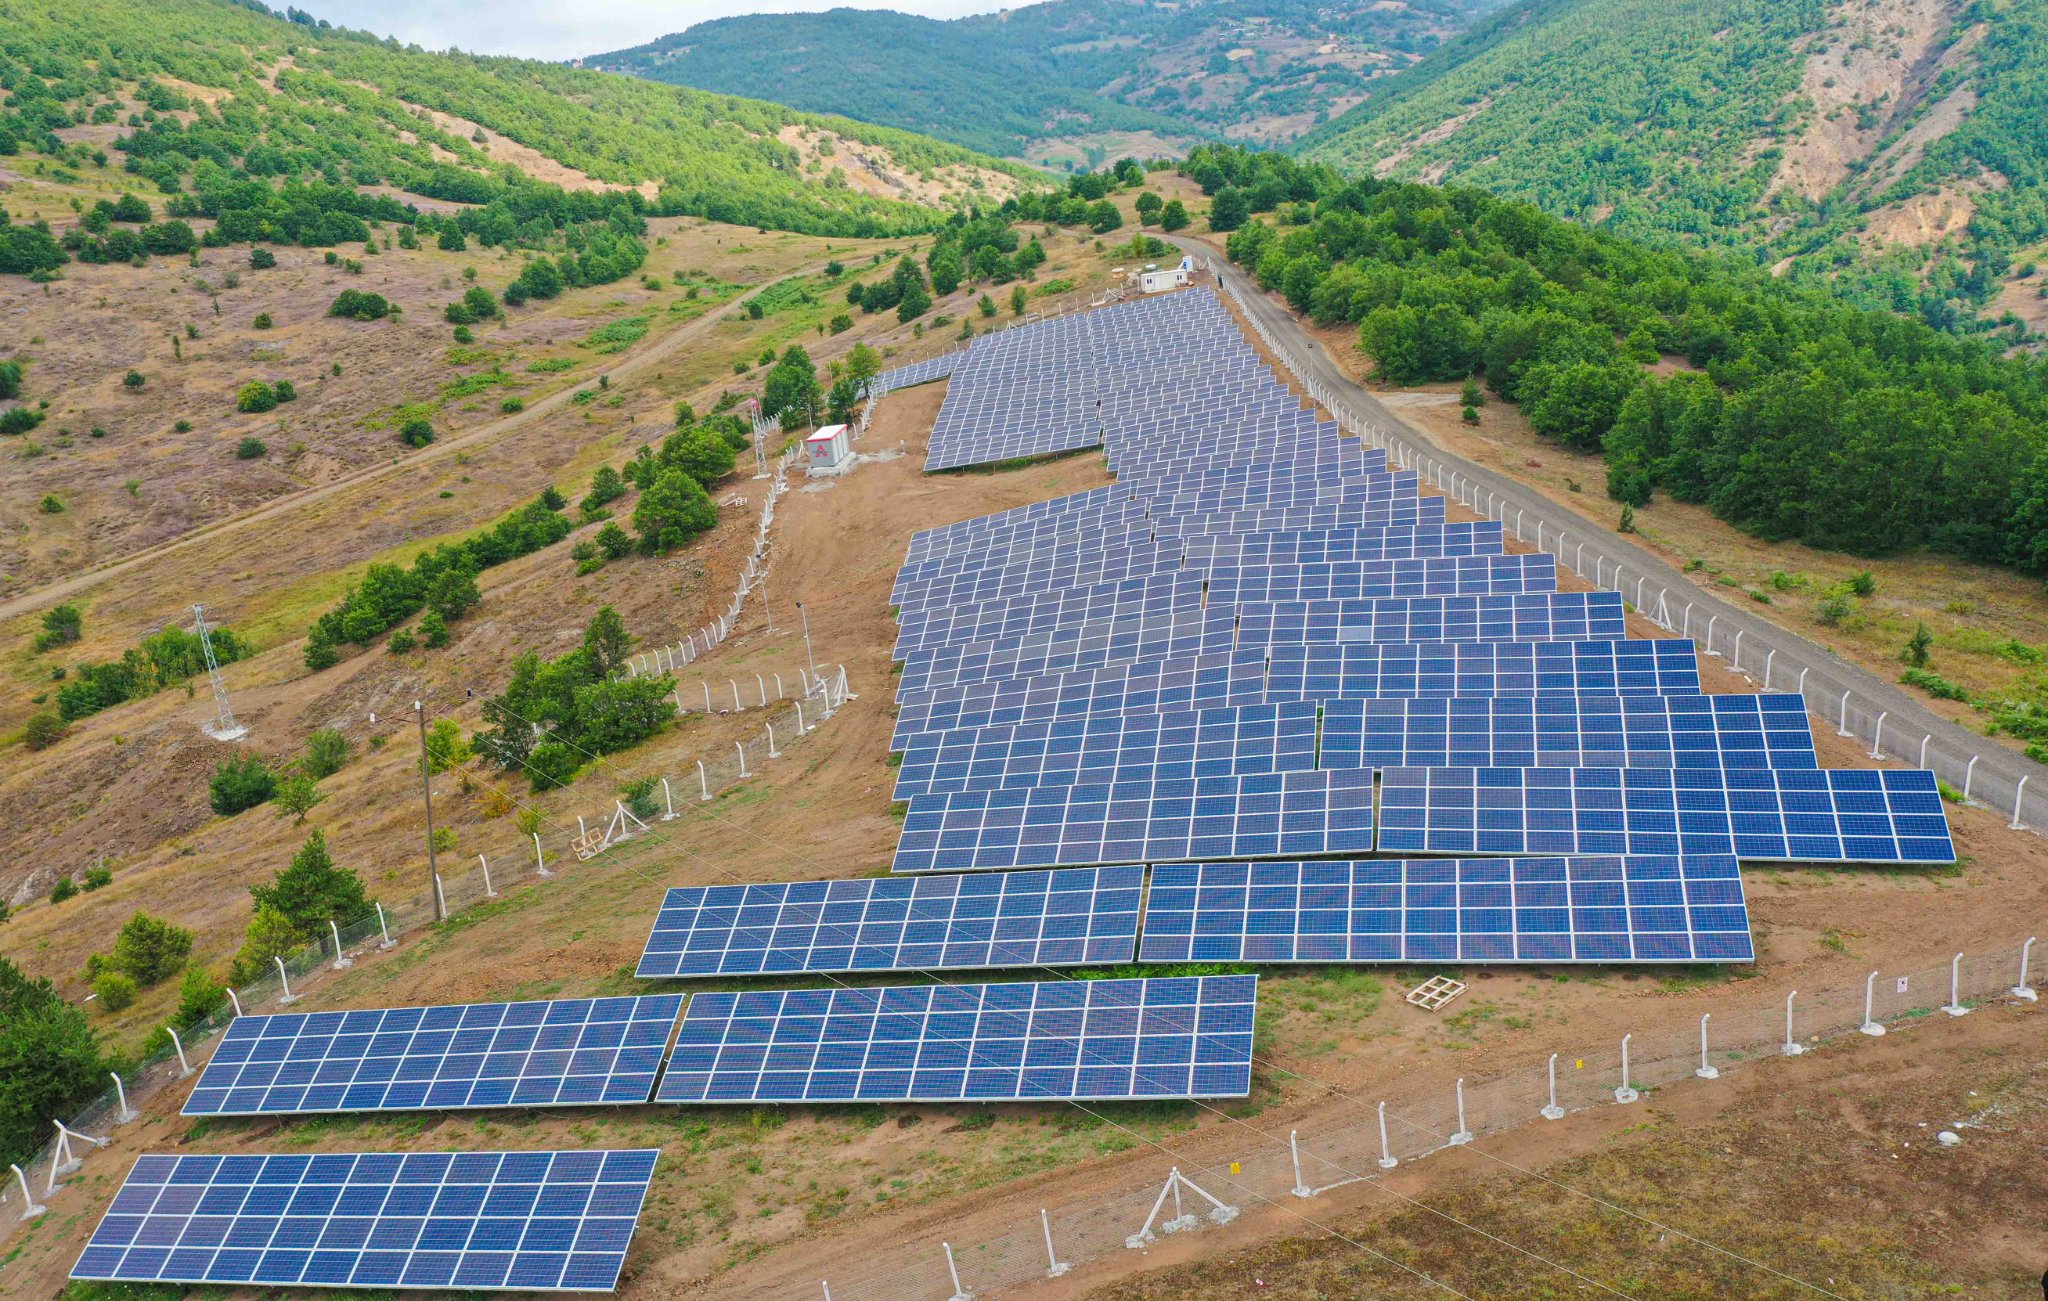 Akkuş’taki güneş enerjisi santralinden 3,1 milyon lira gelir elde edildi